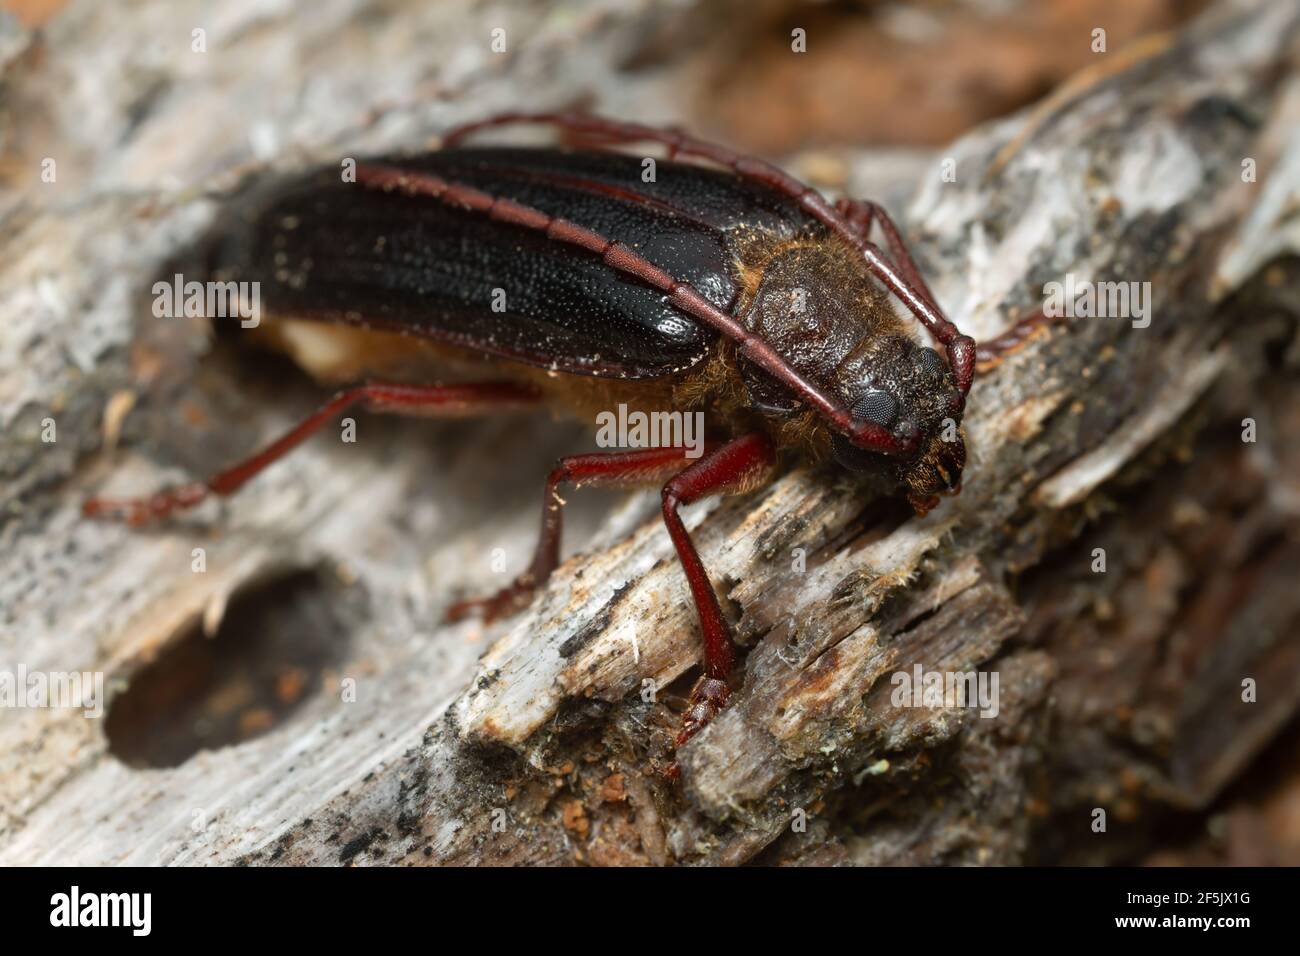 Newly hatched longhorn beetle Tragosoma depsarium on decaying pine wood Stock Photo